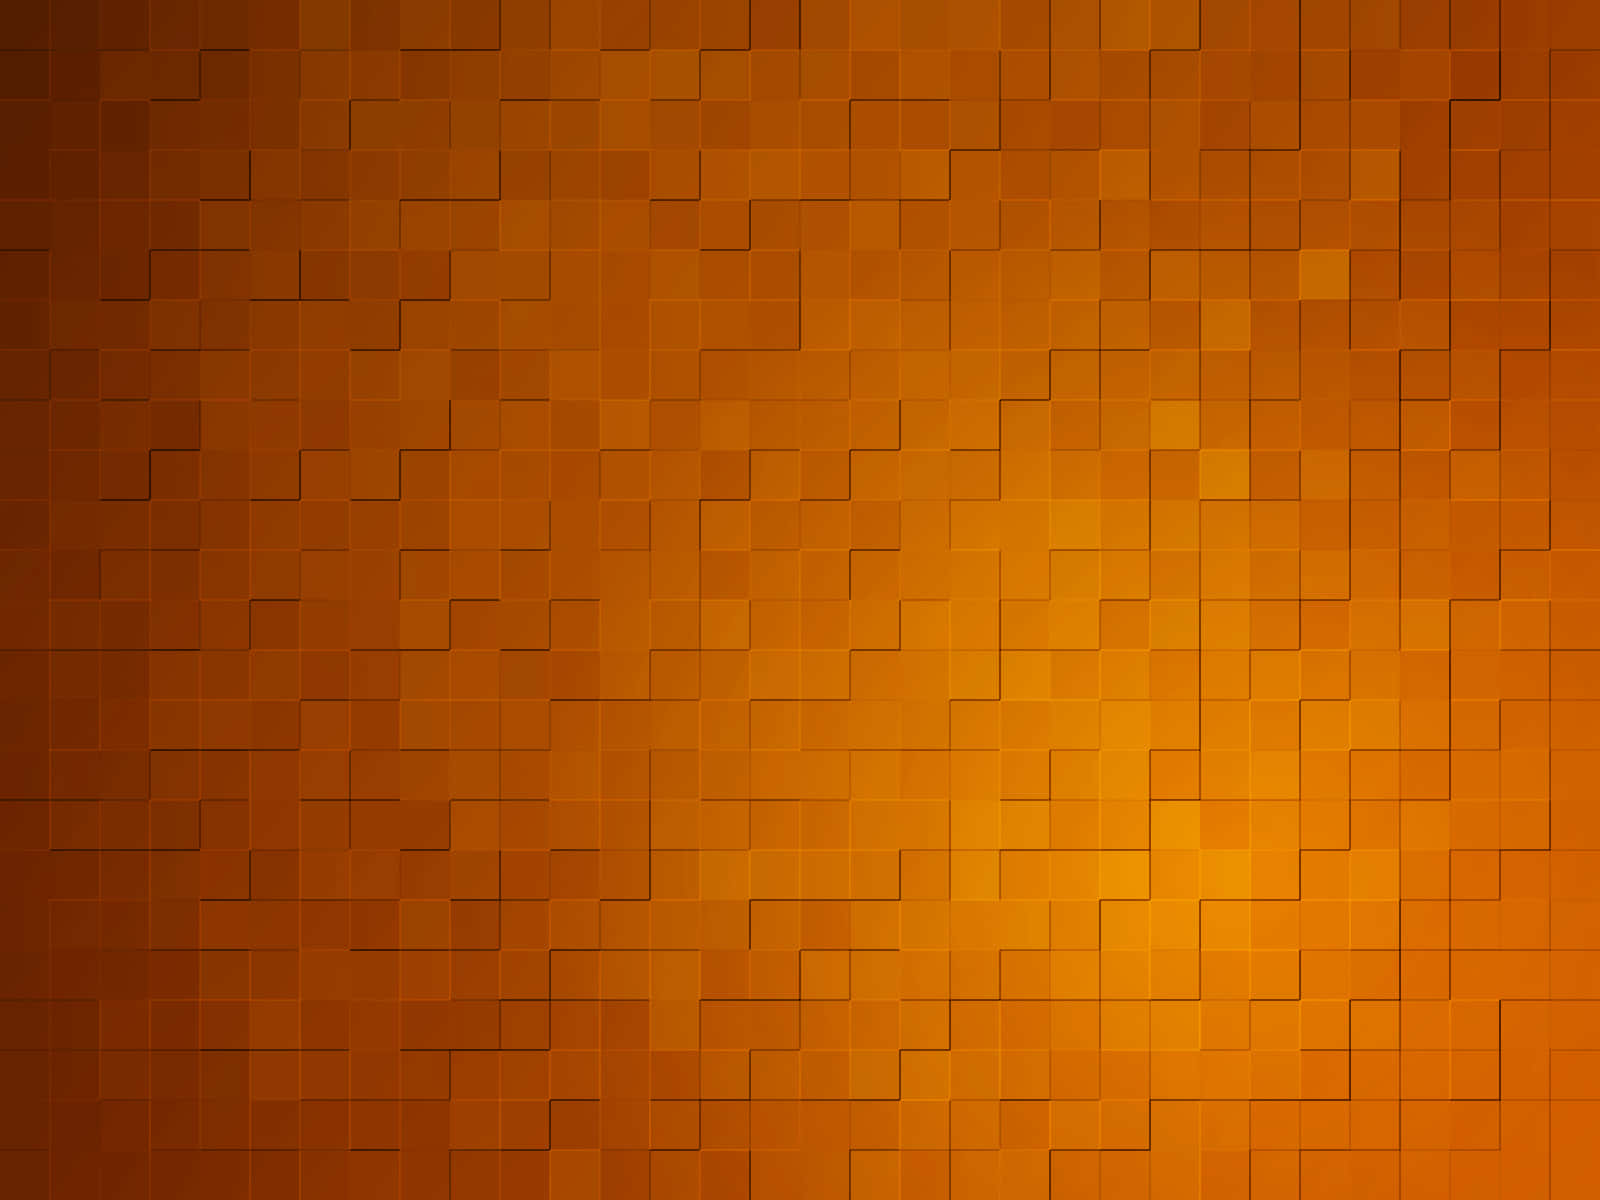 Dark Orange Background with Artistic Flourishes